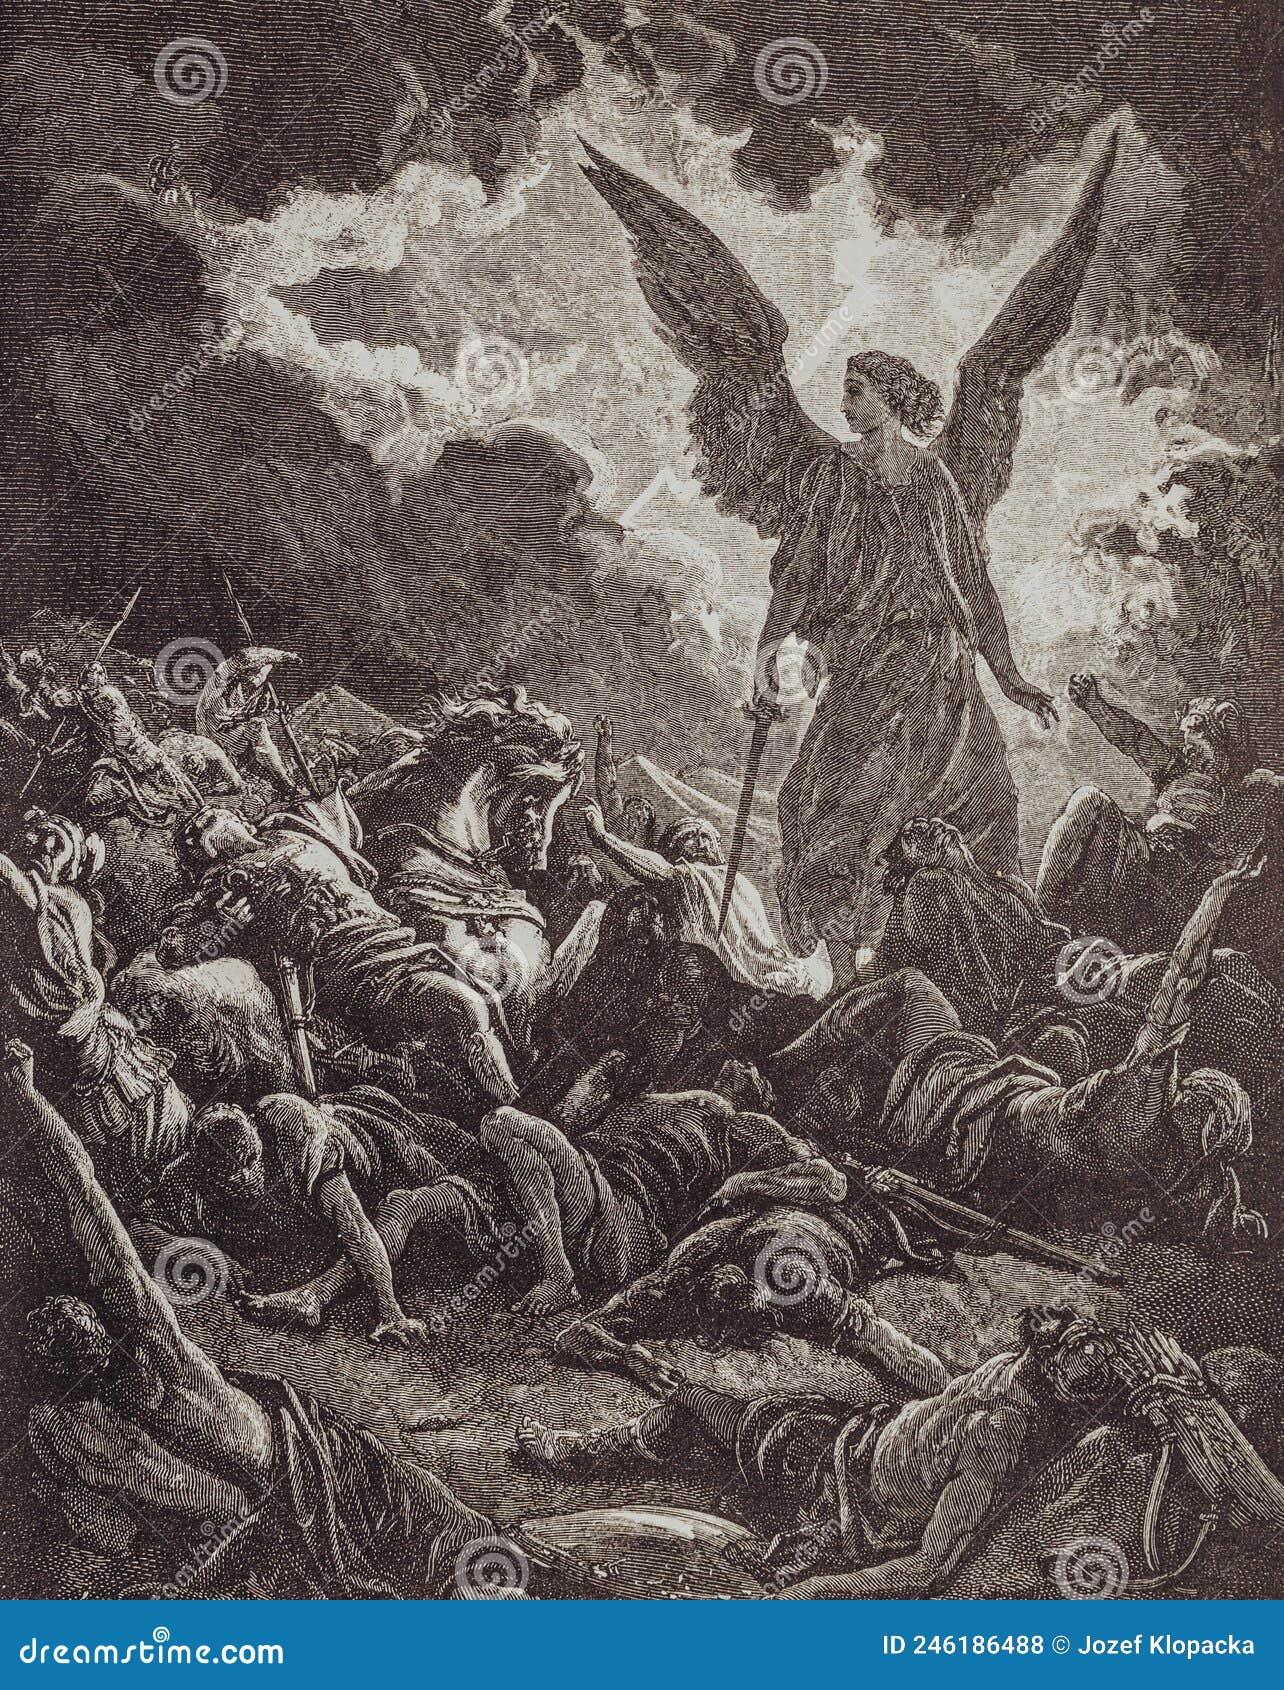 Dante E Nbsp Virgil No Inferno 1880 Pintura De Gustave Courtois